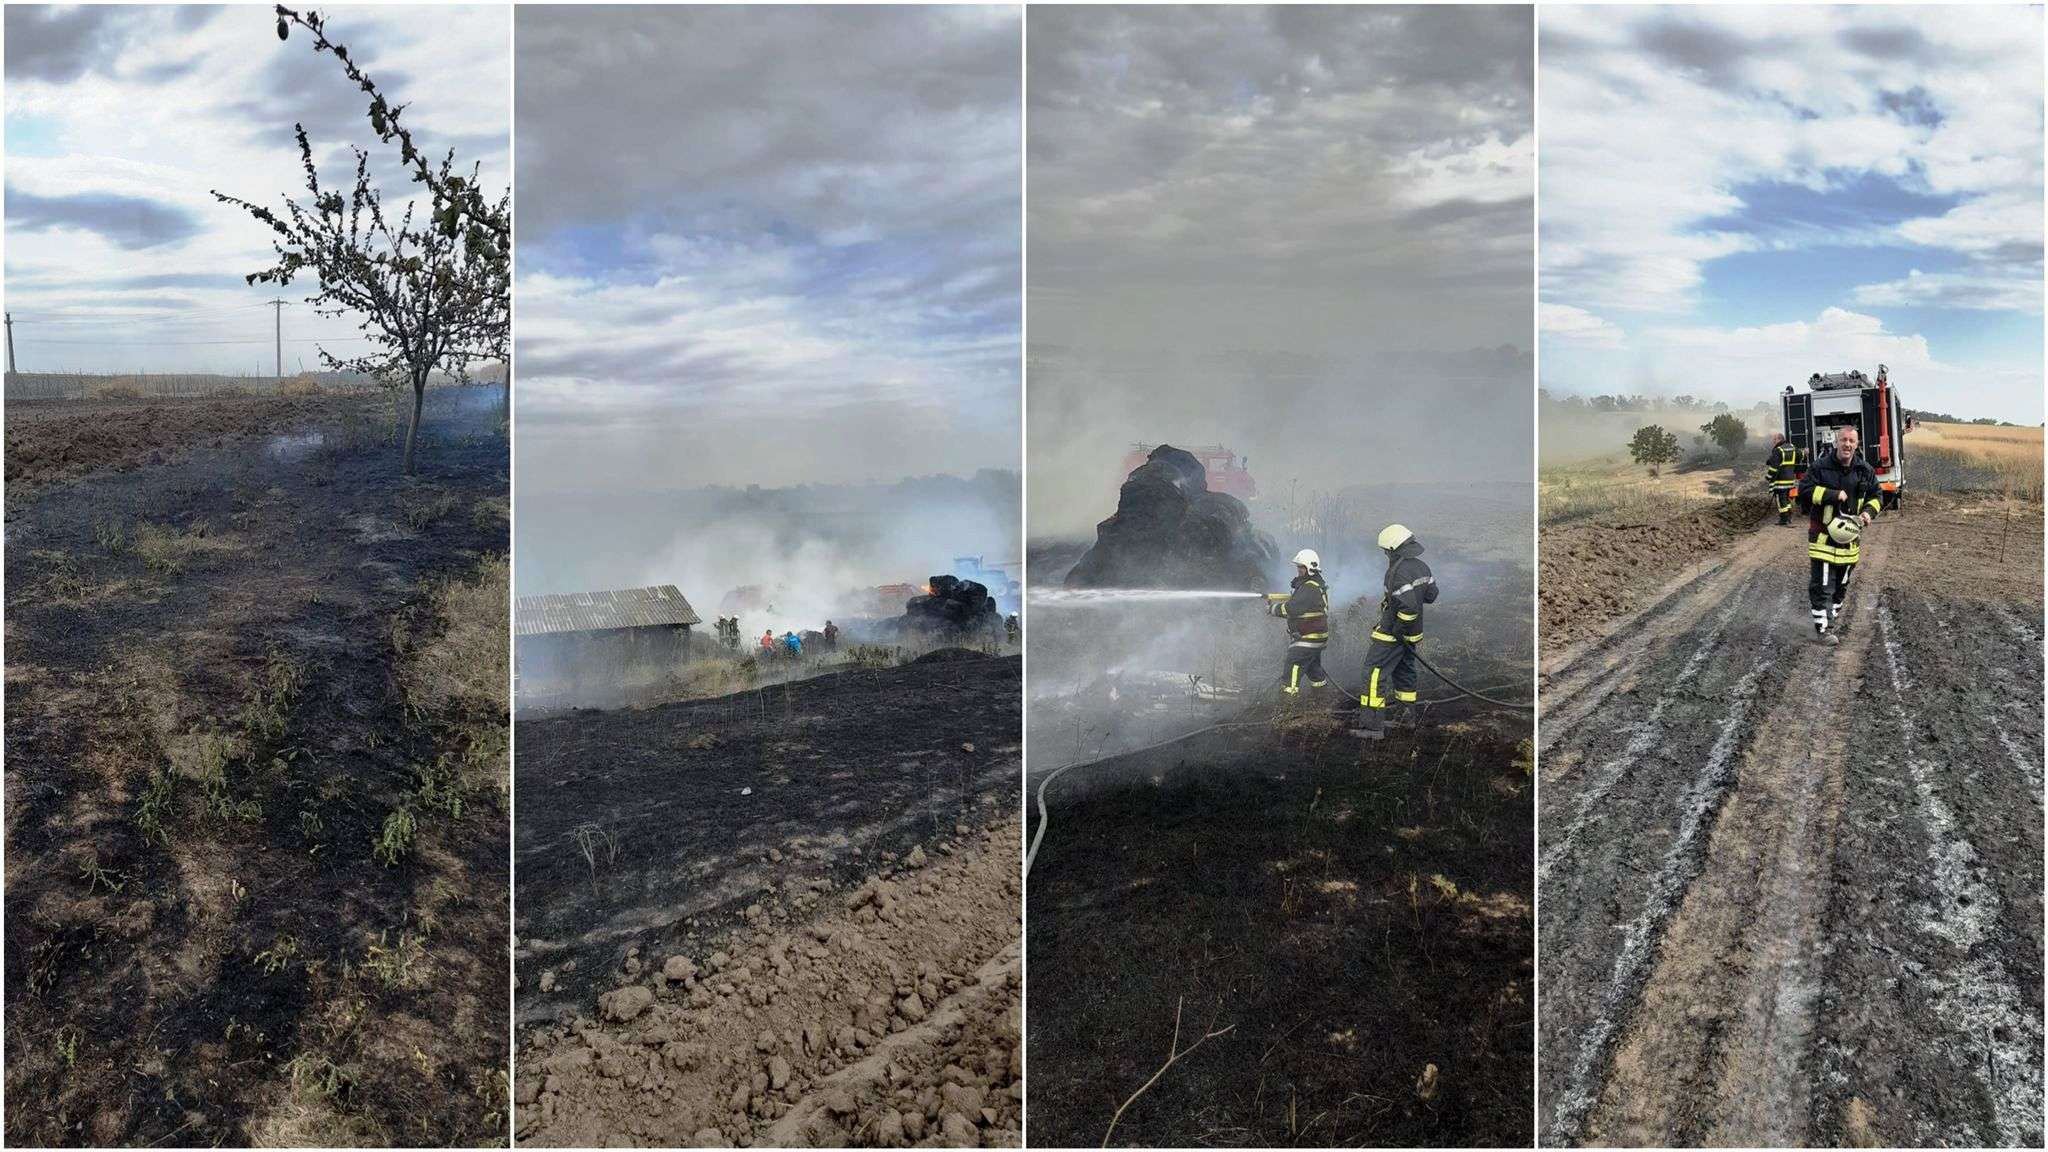 Incendiu DEVASTATOR la o fermă din Semlac, pornit de la O ȚIGARĂ. Au ars 14 ha de grâu, 6 ha de rapiță, 20 de pomi fructiferi și 10 baloți de fân